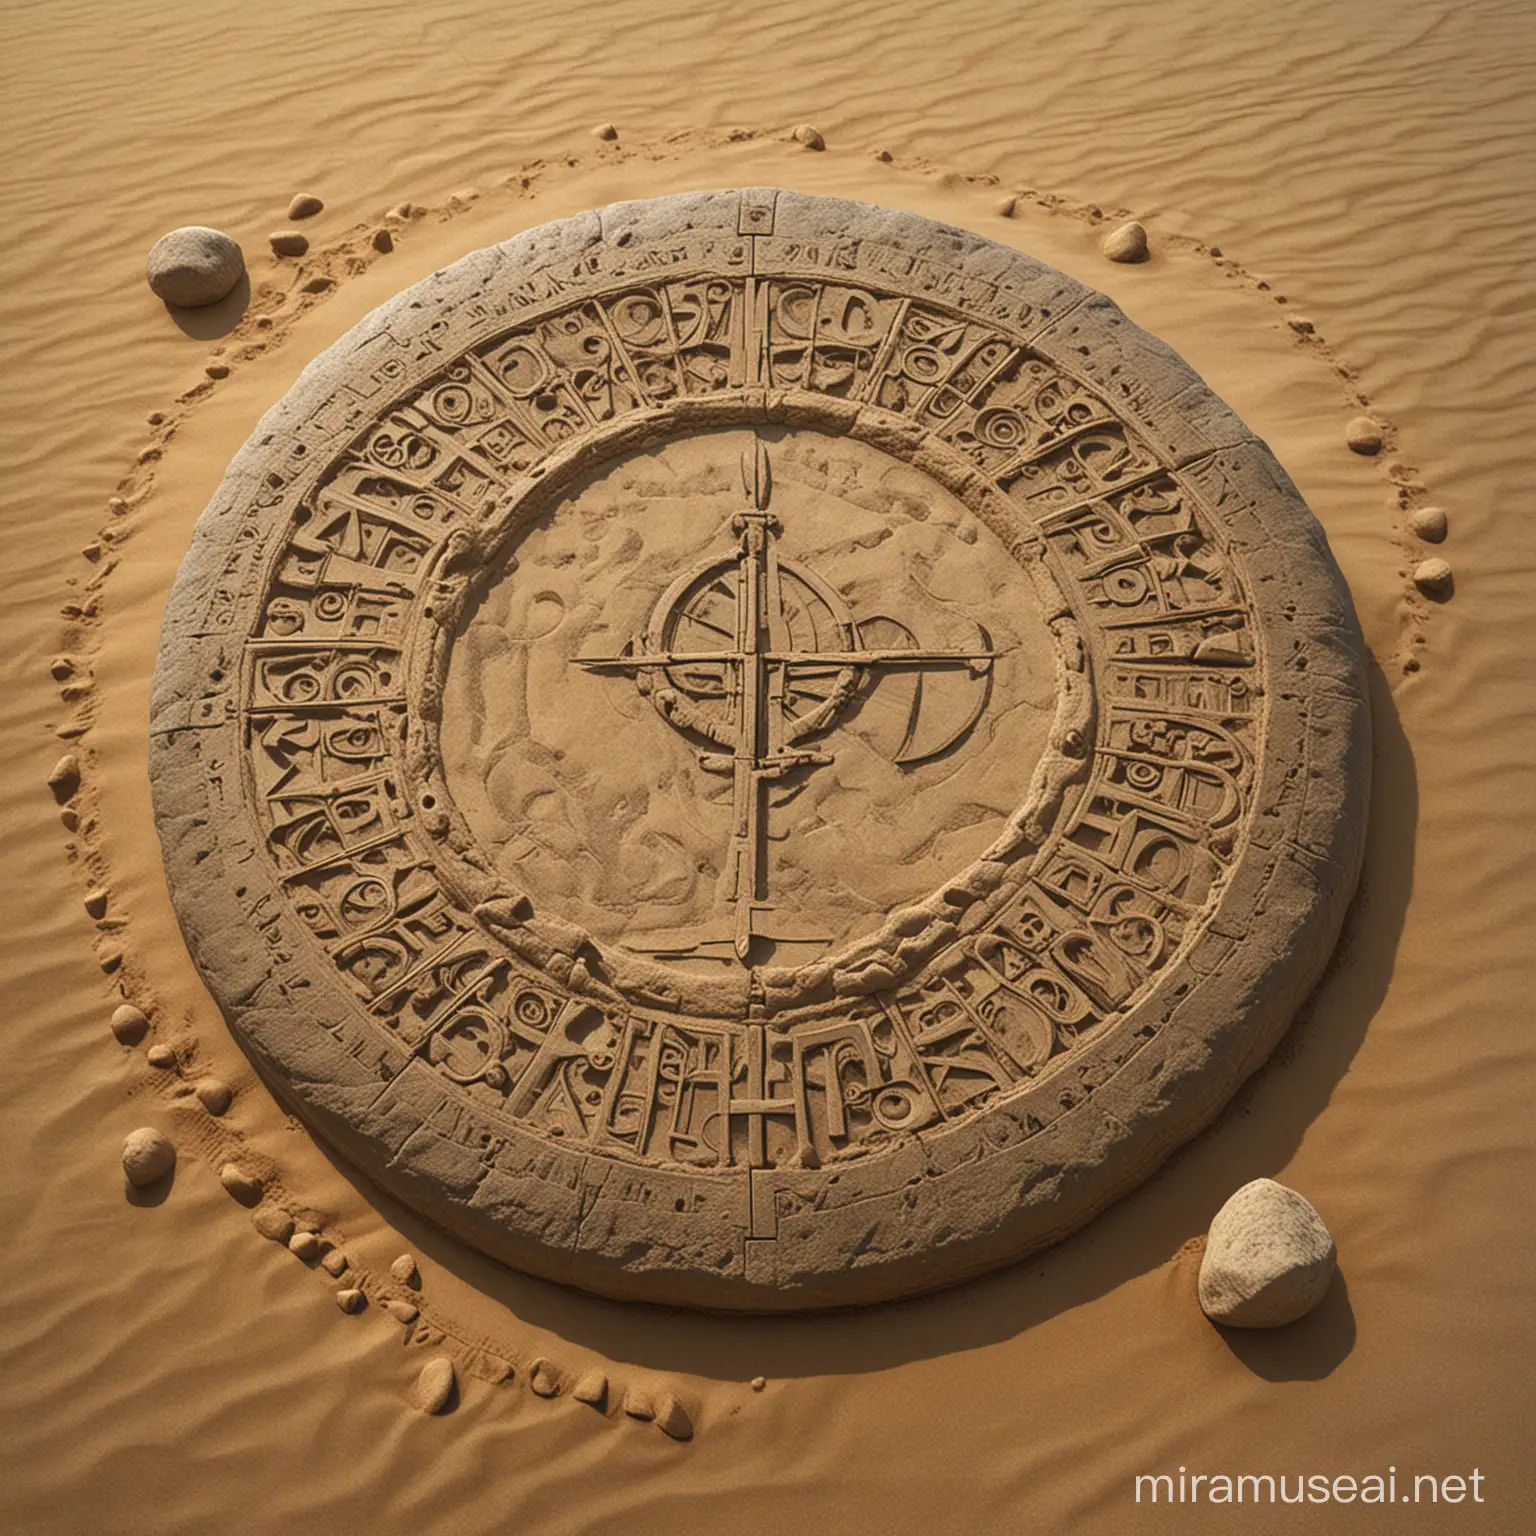 Mysterious Ancient Stone Tool in Desert Landscape Beksiski Inspired Artwork